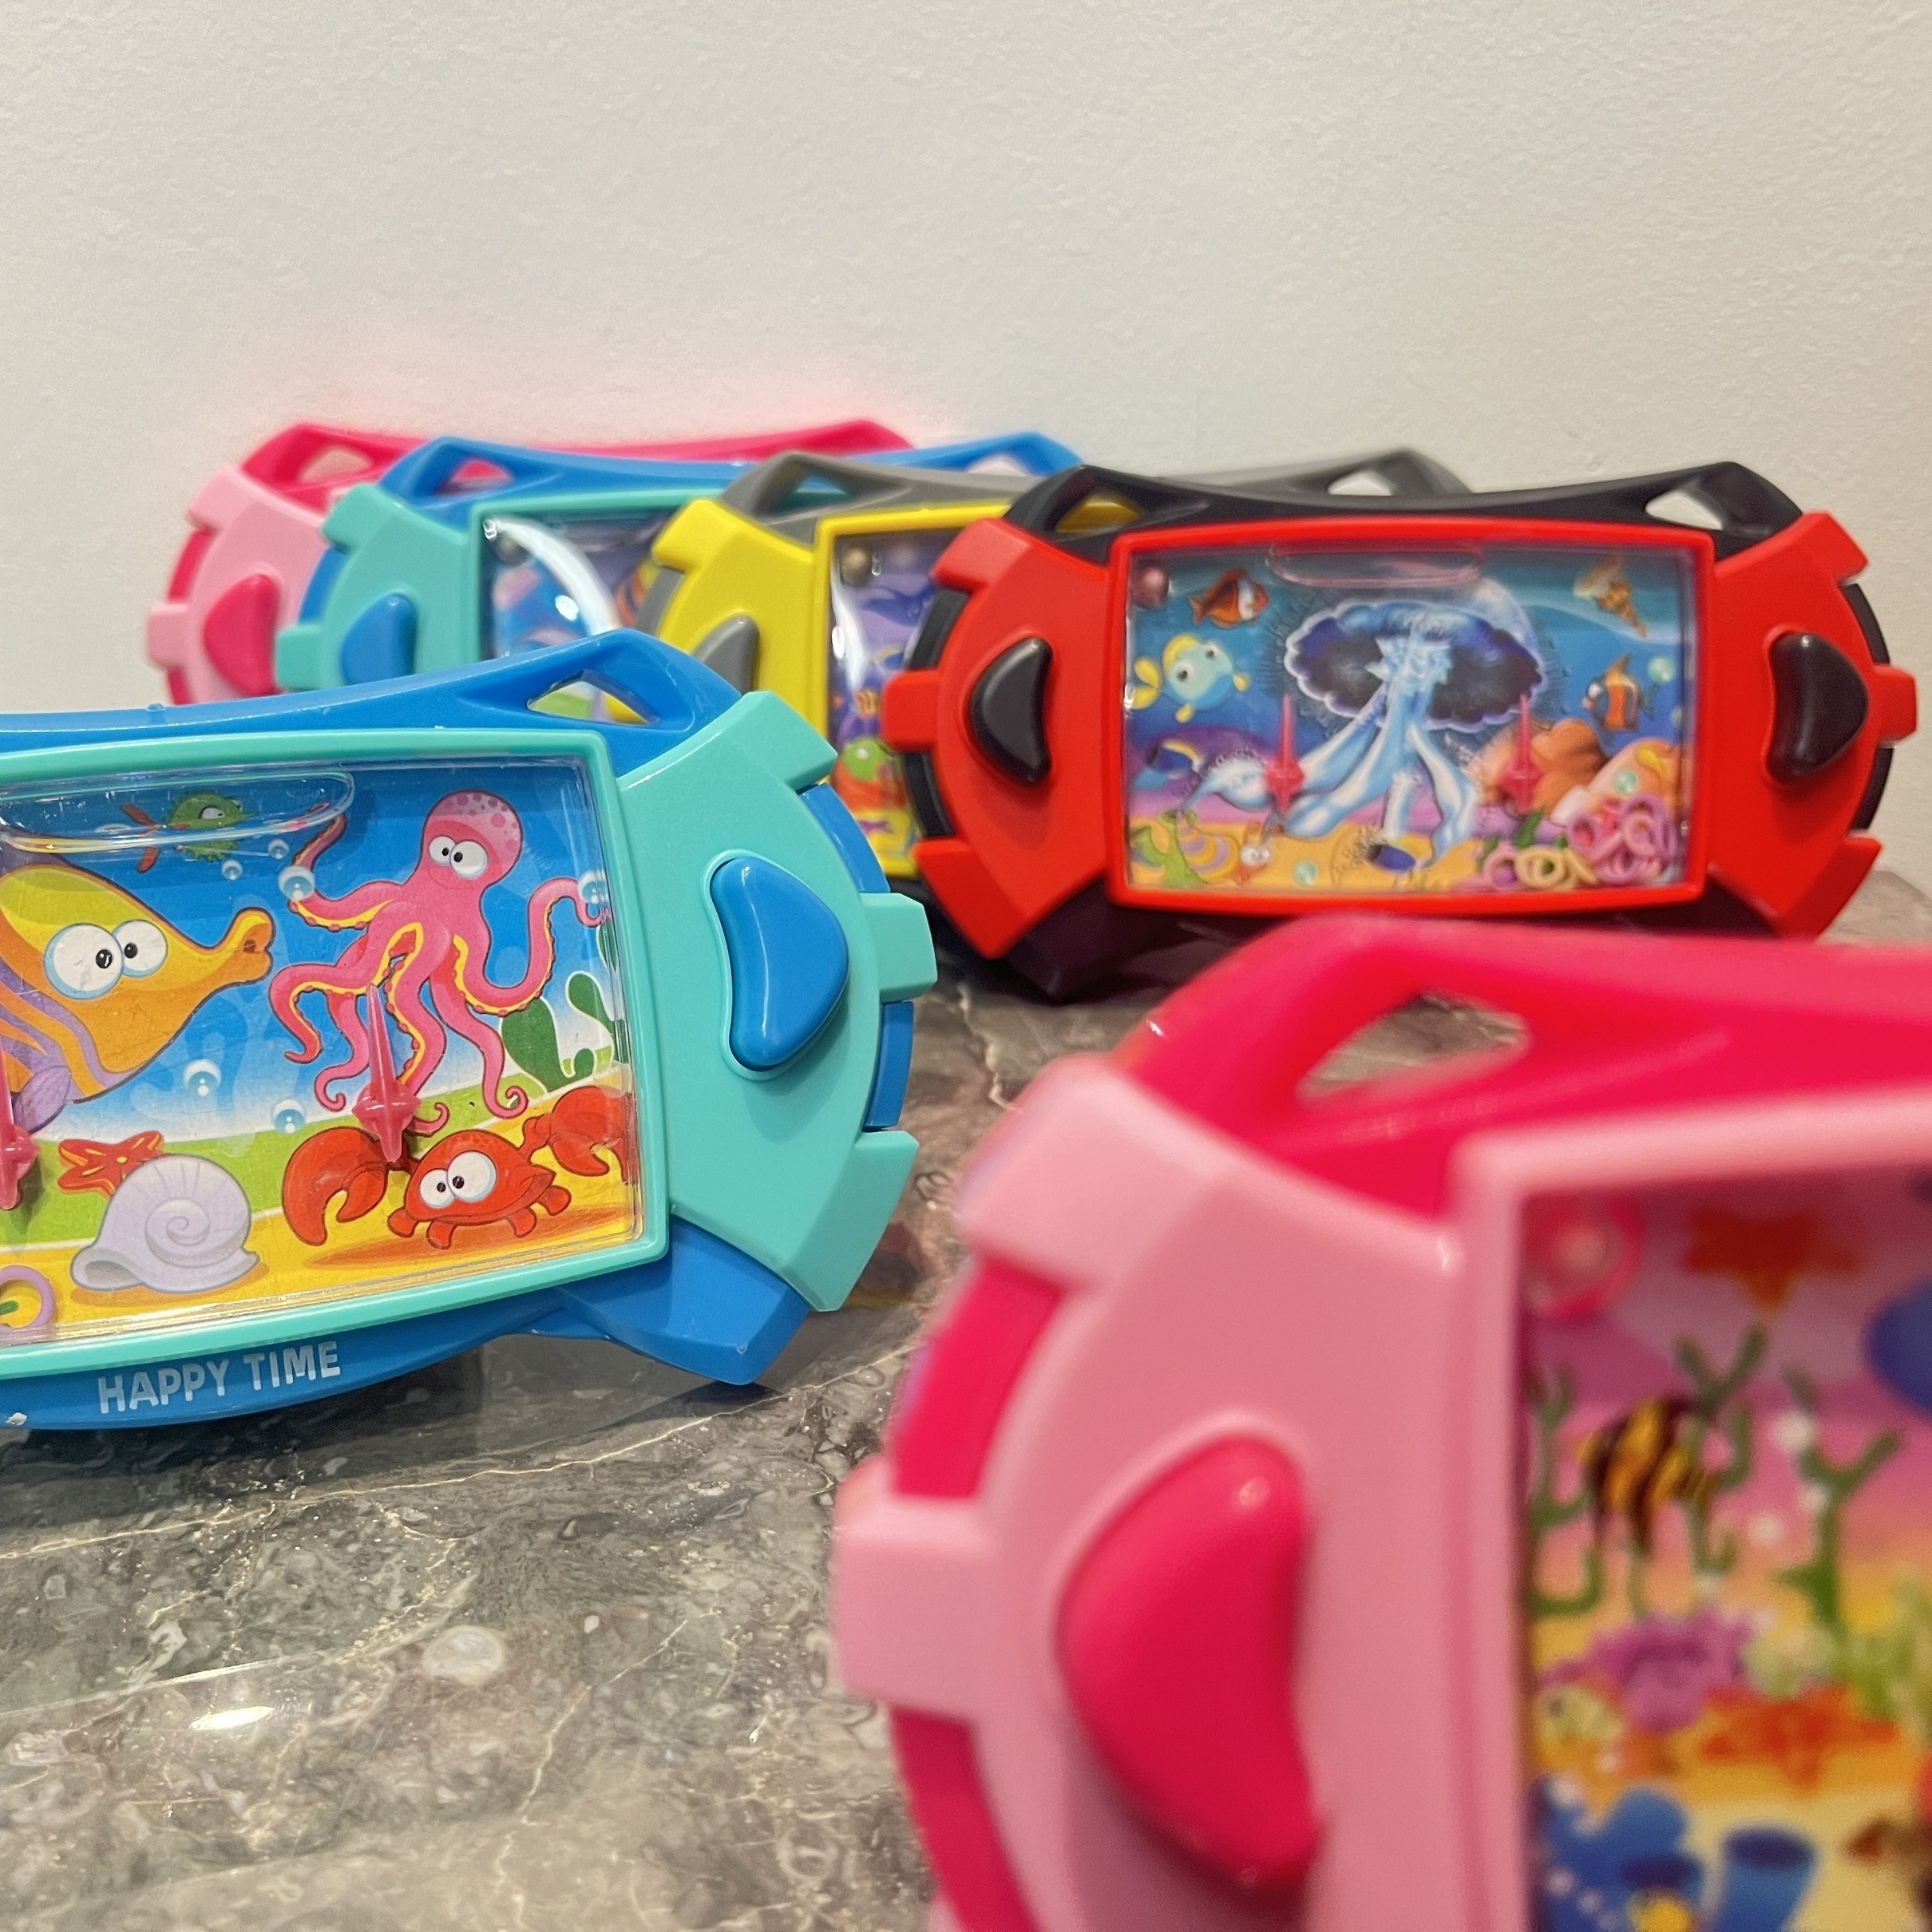  Juguetes electrónicos Pop It Fidget para niños de 8 a 12 años,  juego de empuje rápido, juguetes sensoriales y juegos para autismo, niños  autistas, juegos de memoria cerebral, ideas de cumpleaños